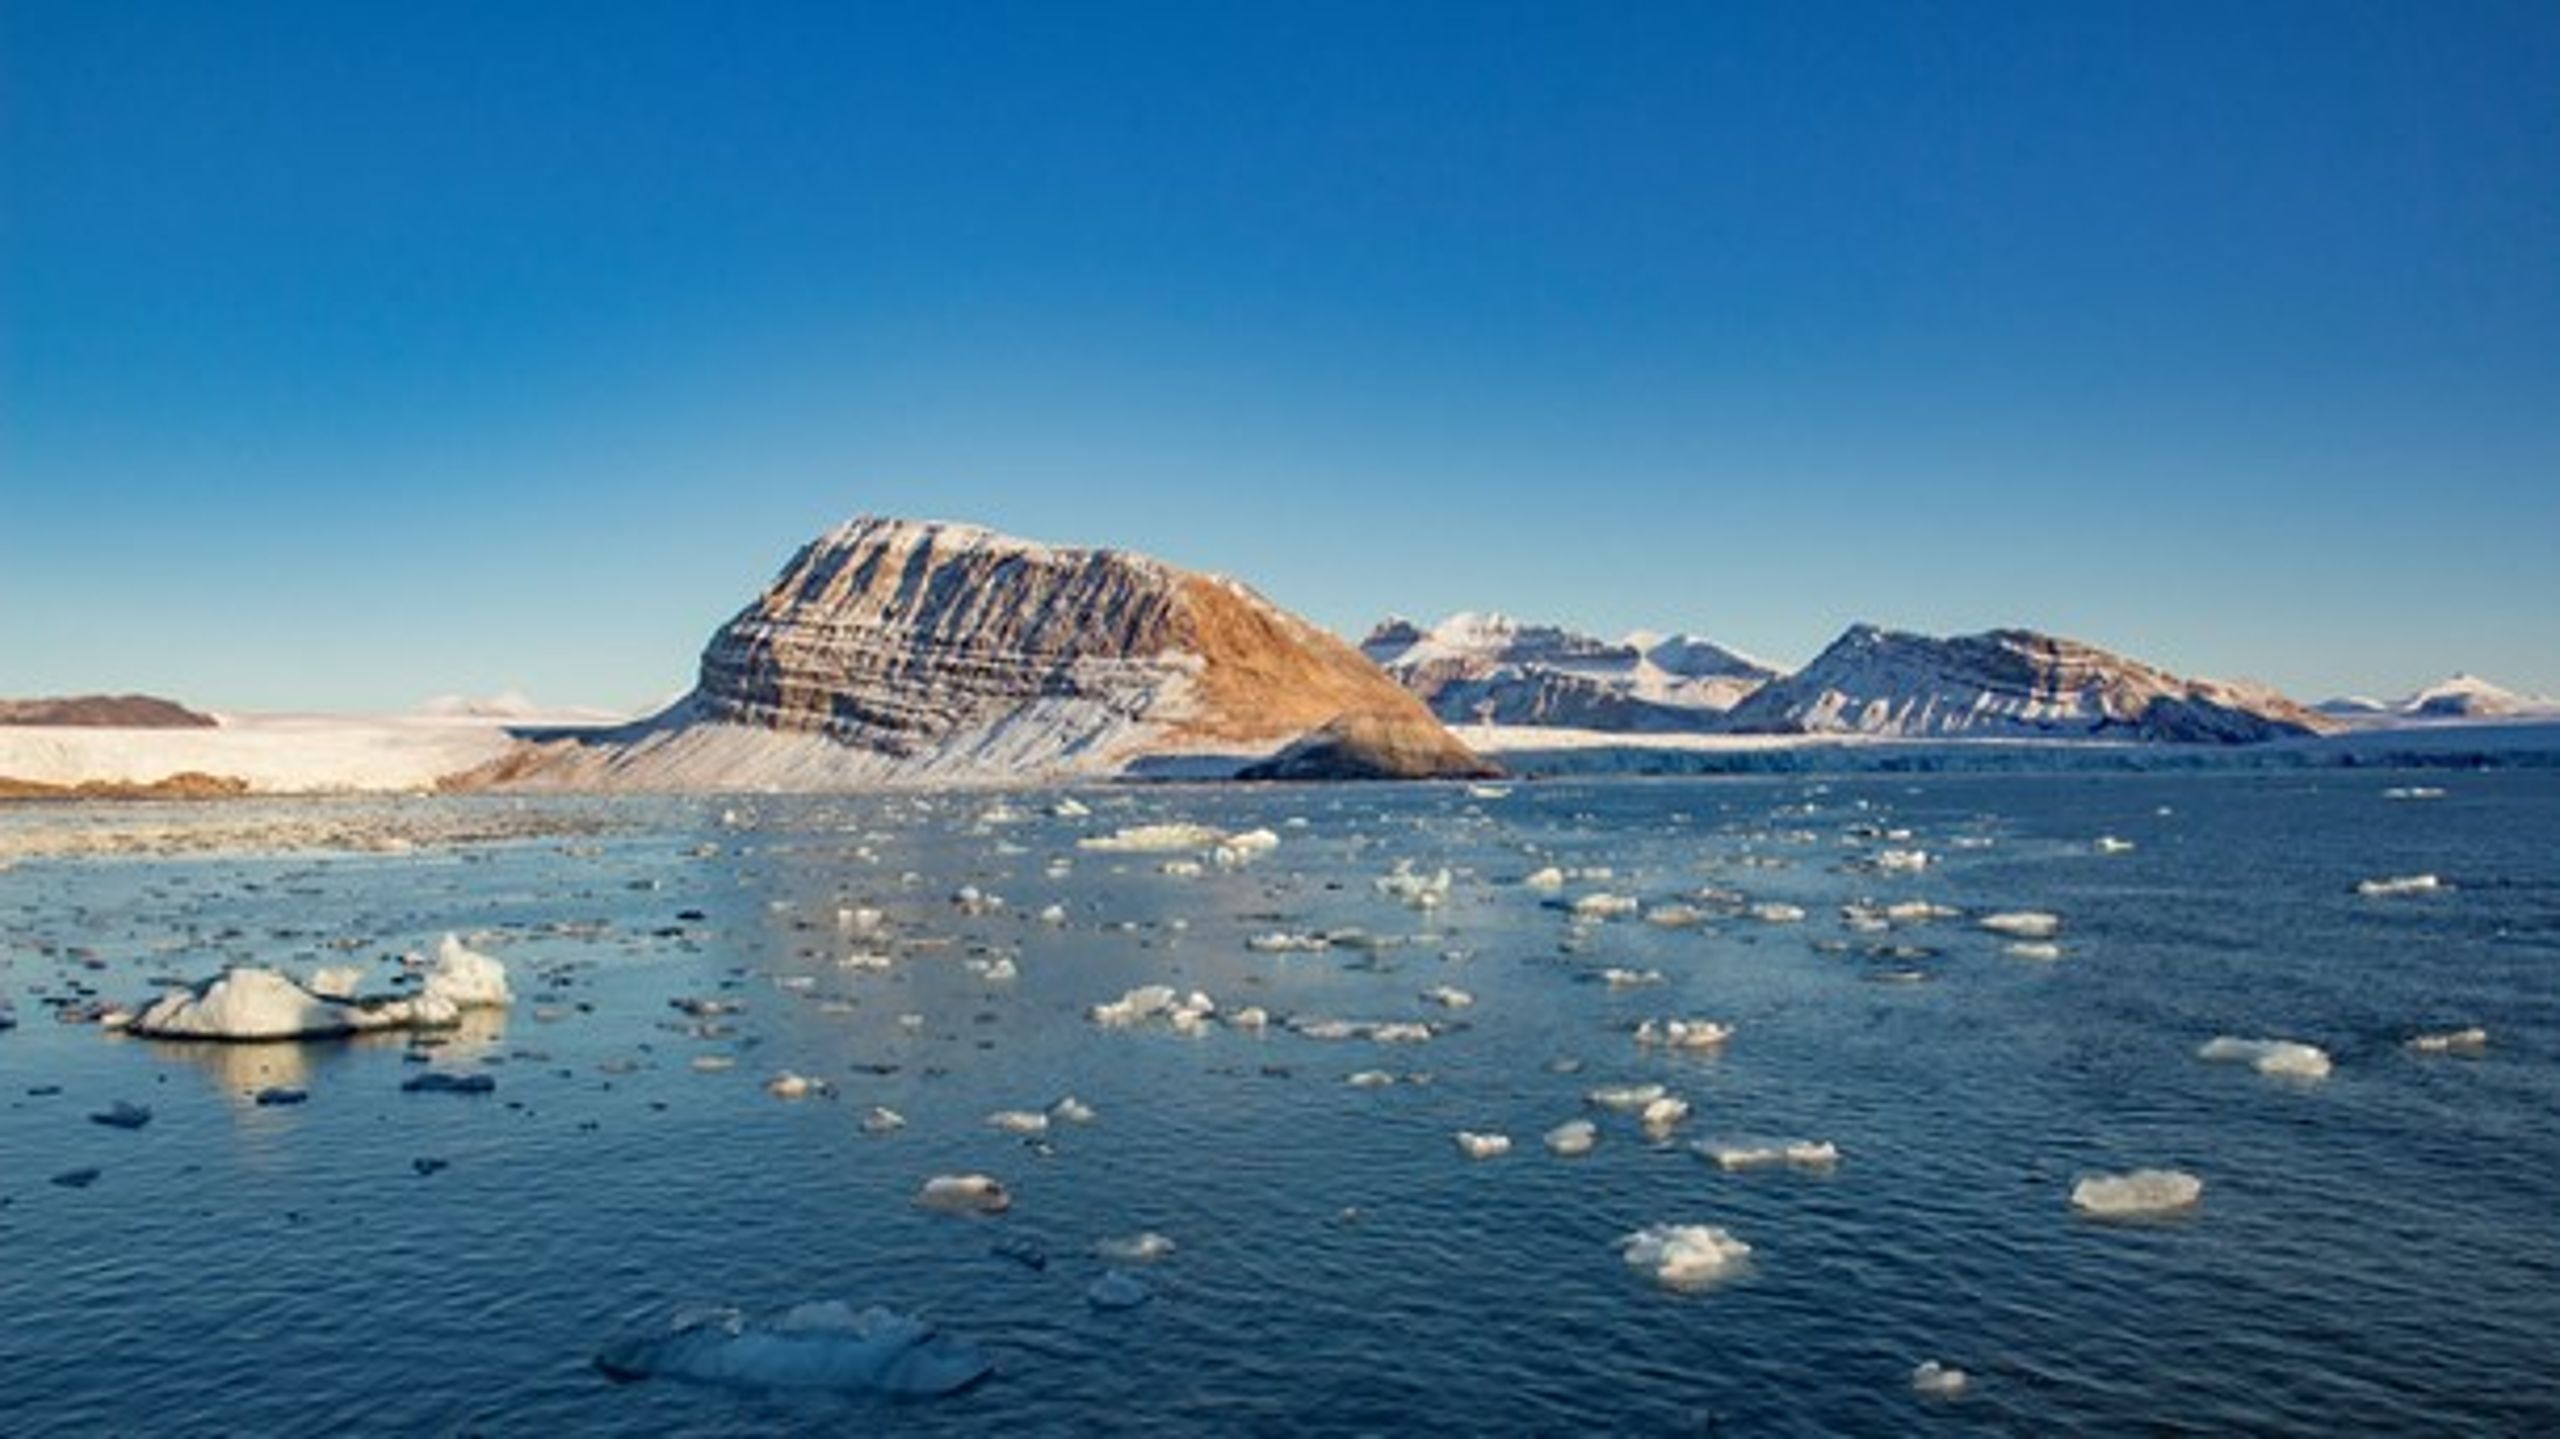 Forskningen på klimaet i Arktis lider allerede, skriver Martin Breum, Arktis-journalist, om den nye usikkerheten rundt Russlands politikk i nordområdene.&nbsp;&nbsp;